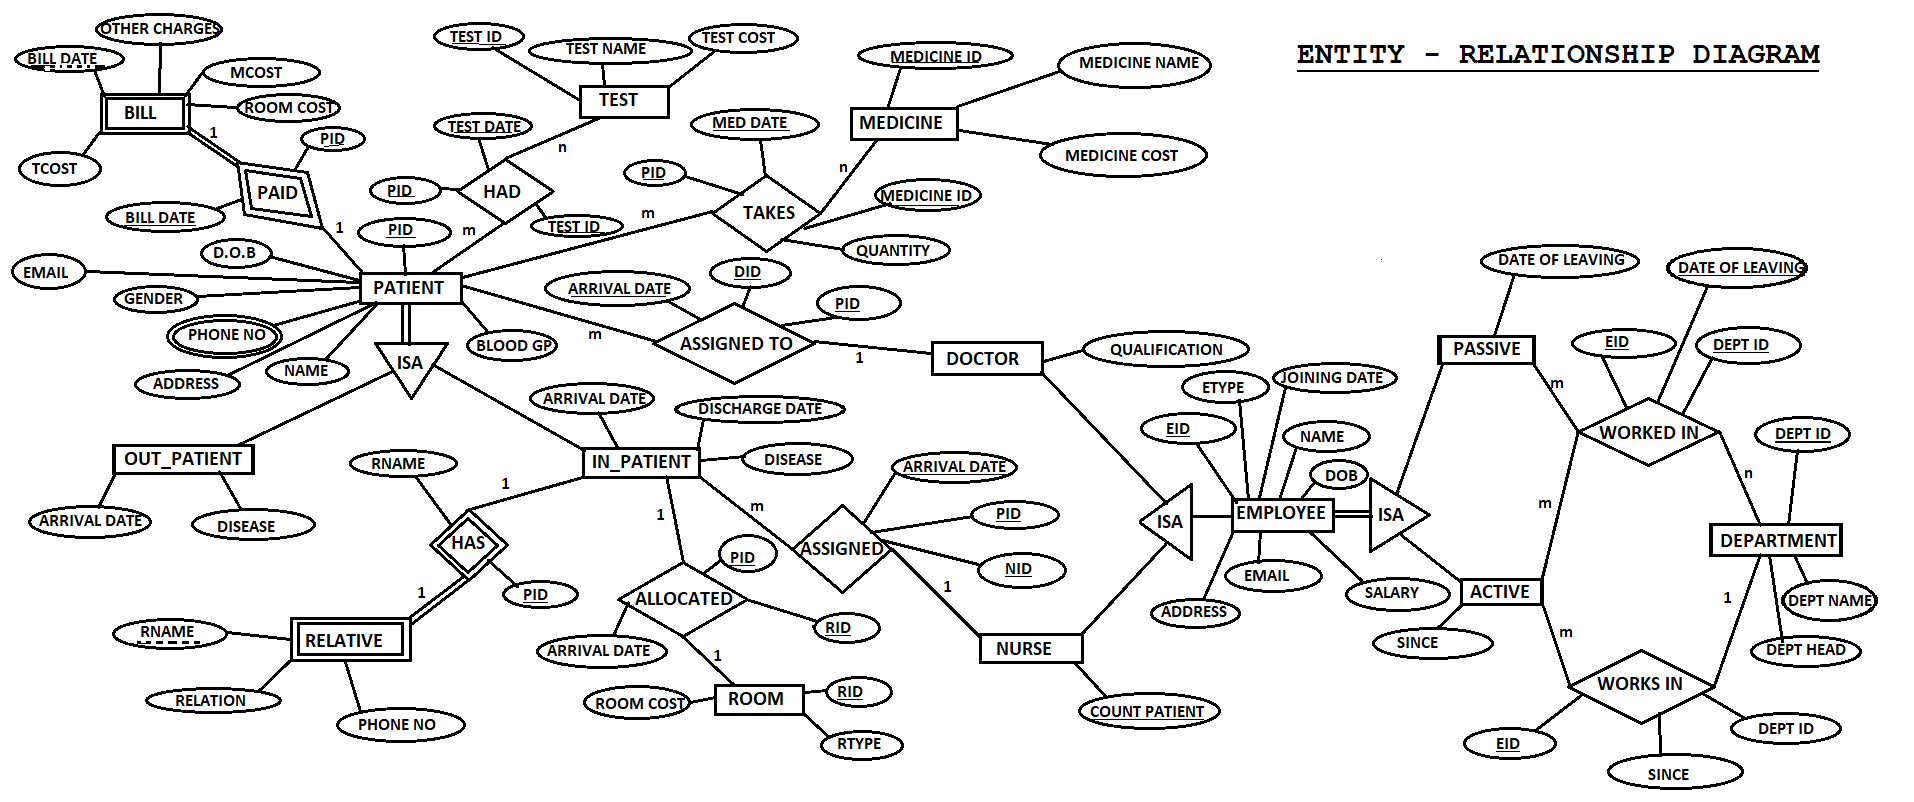 E-R Diagram · Issue #1 · Vikesh8860/hospital-Management